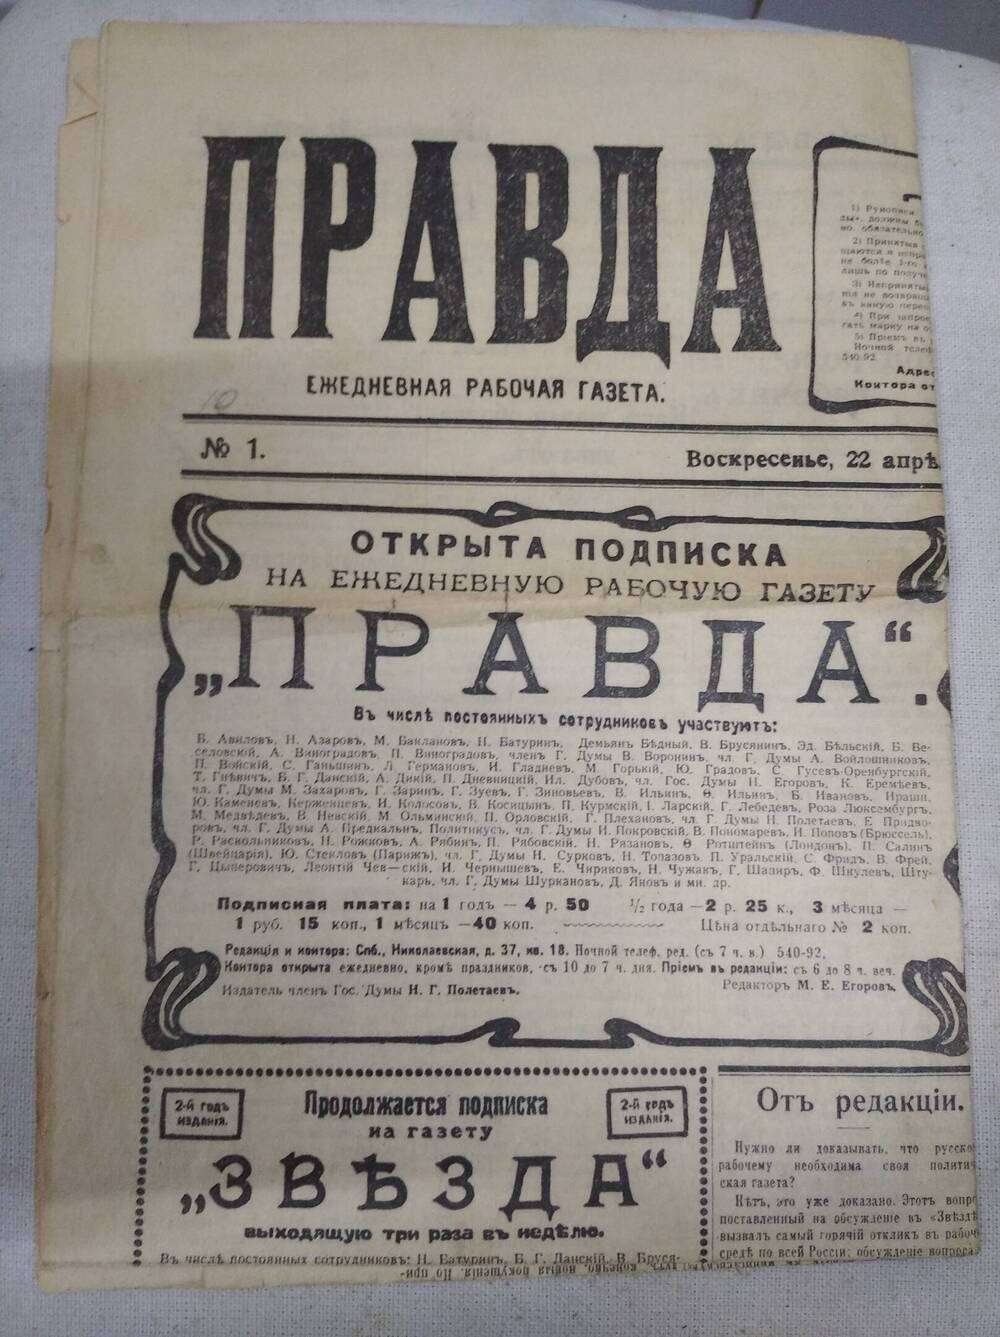 Газета Правда - копия первого номера газеты от 22 апреля (5мая) 1912 год.